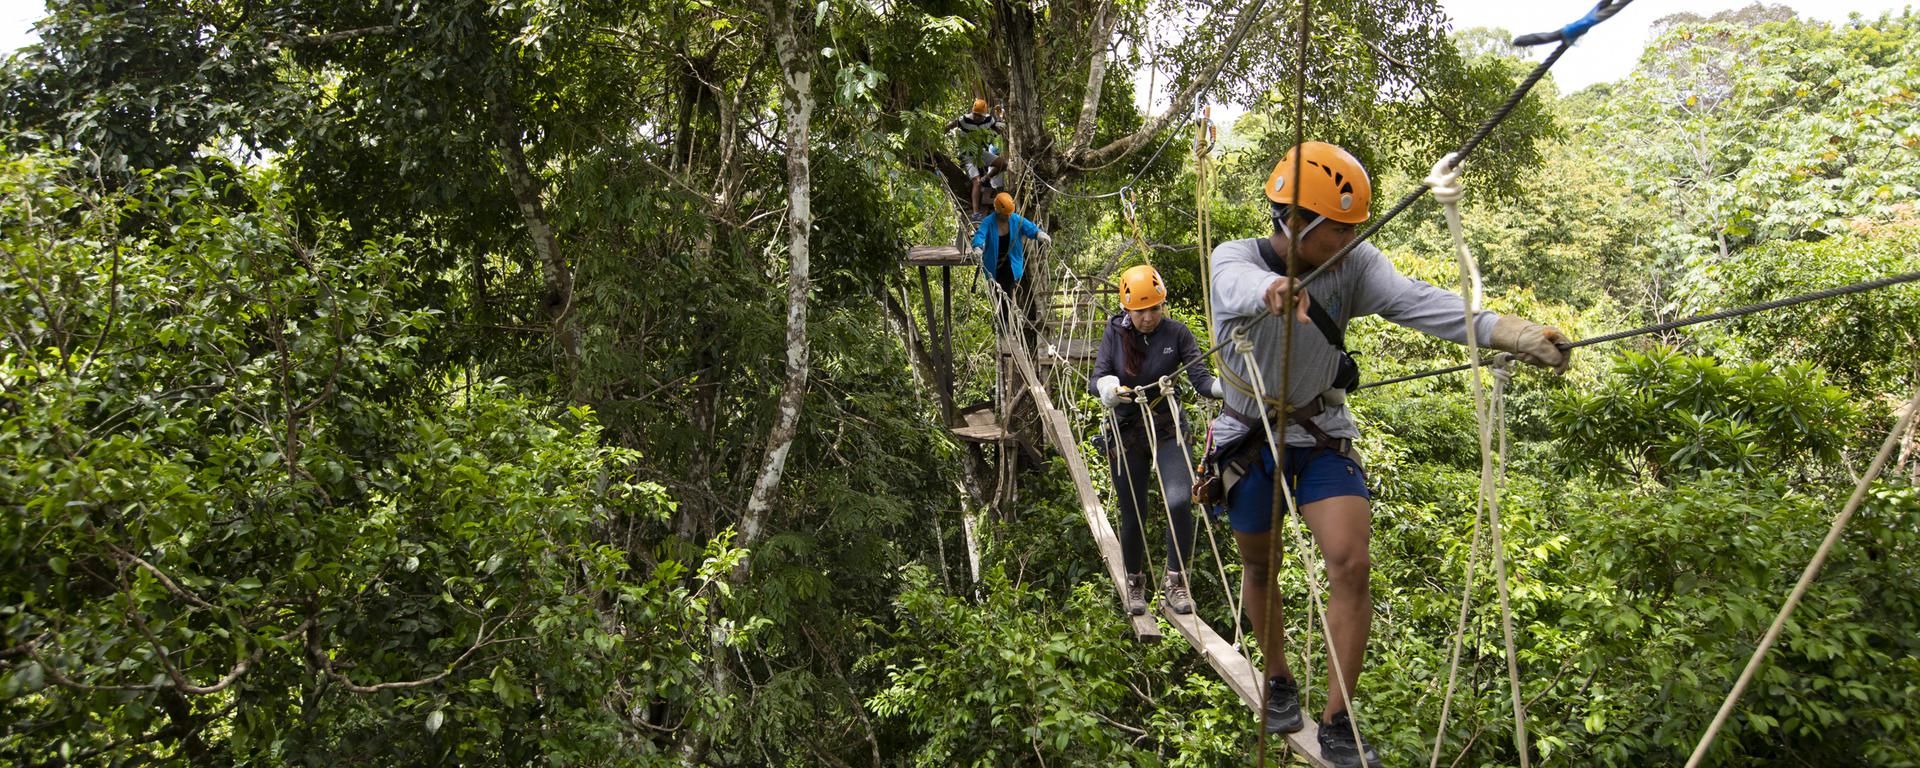 Loreto: cómo llegar a la reserva Pacaya Samiria y qué deportes extremos podemos practicar en ella